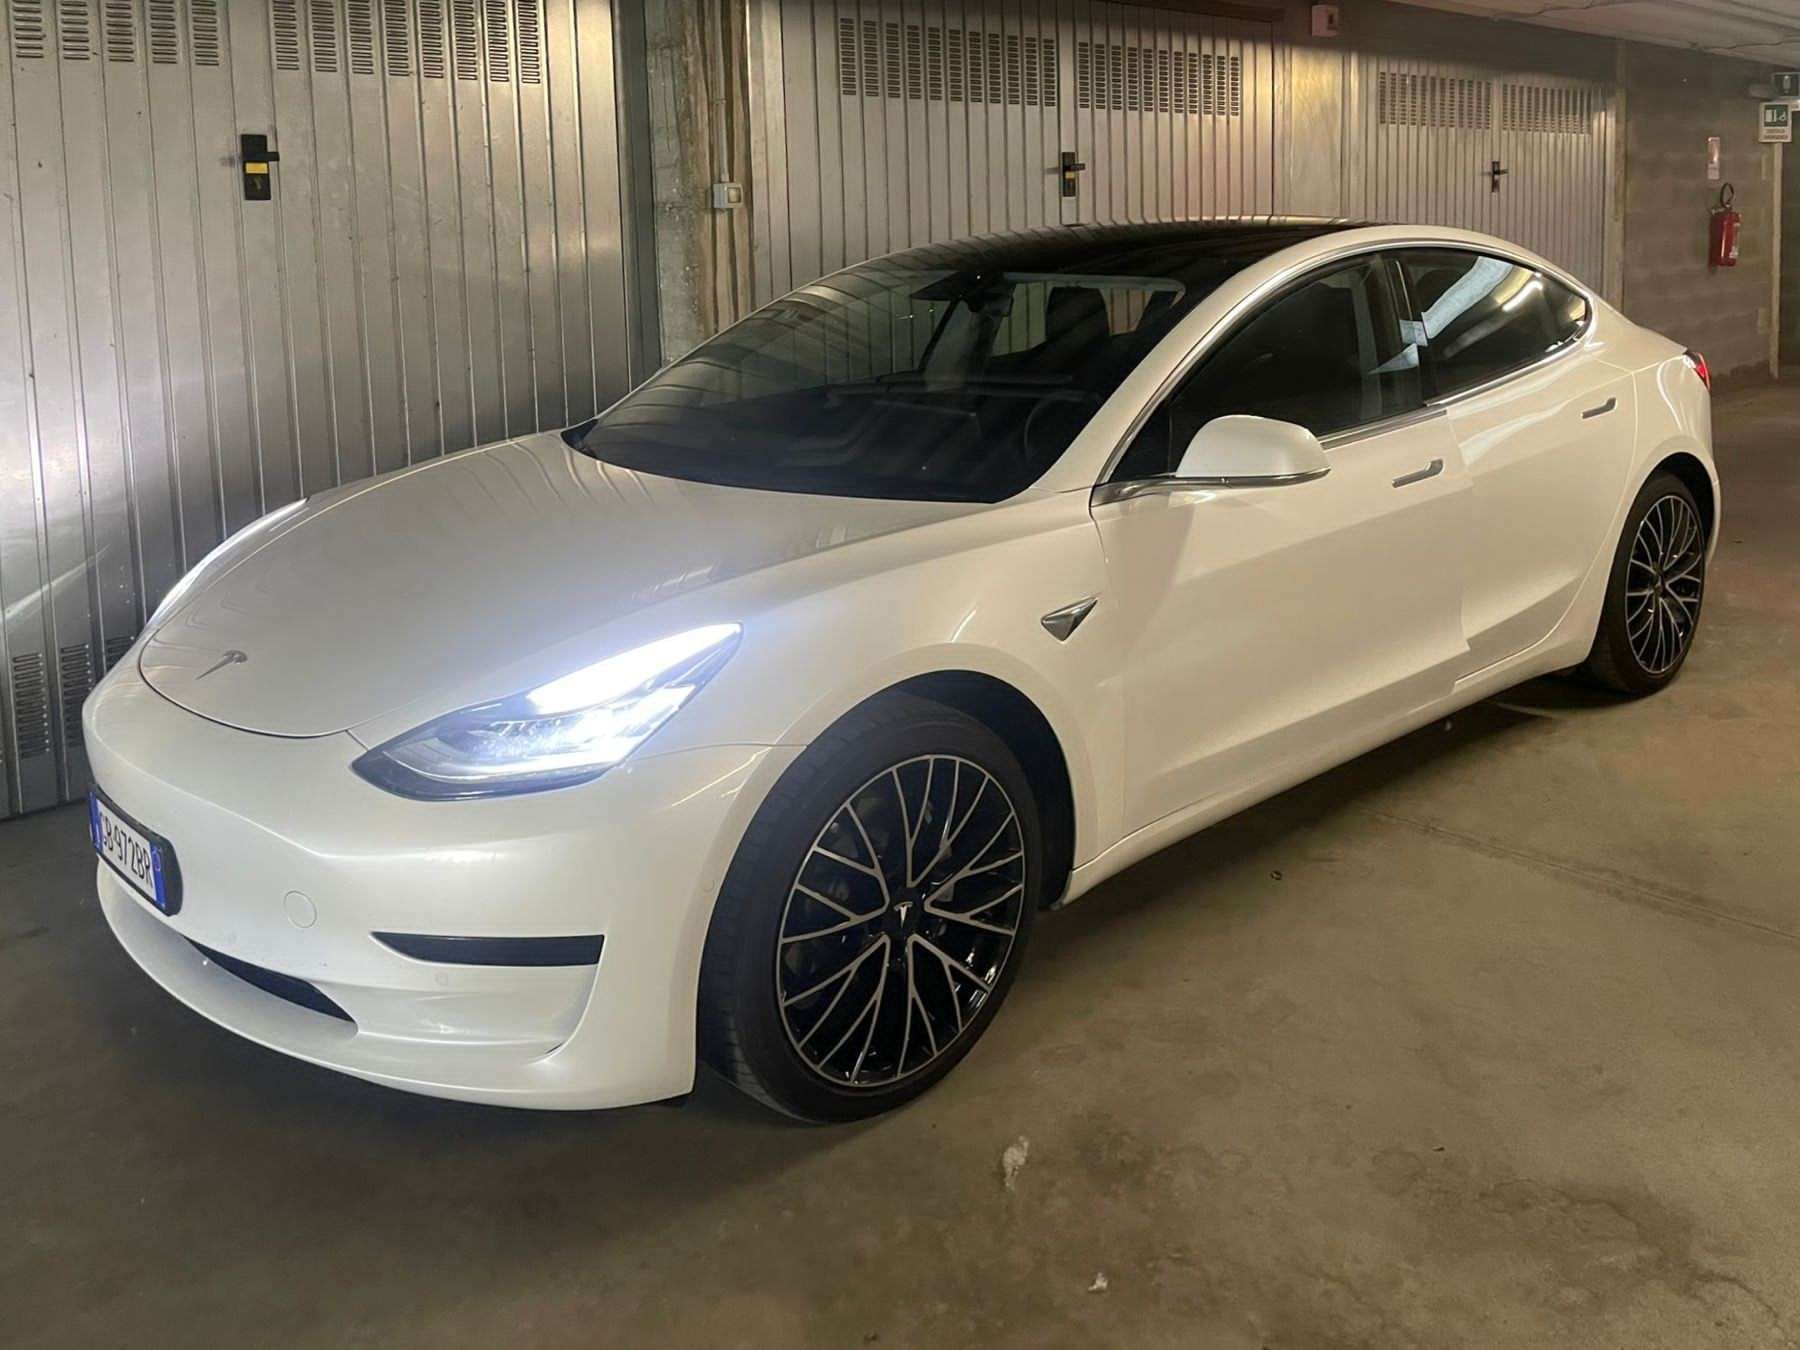 Tesla Model 3 Sedan in White used in Verolengo for € 38,500.-